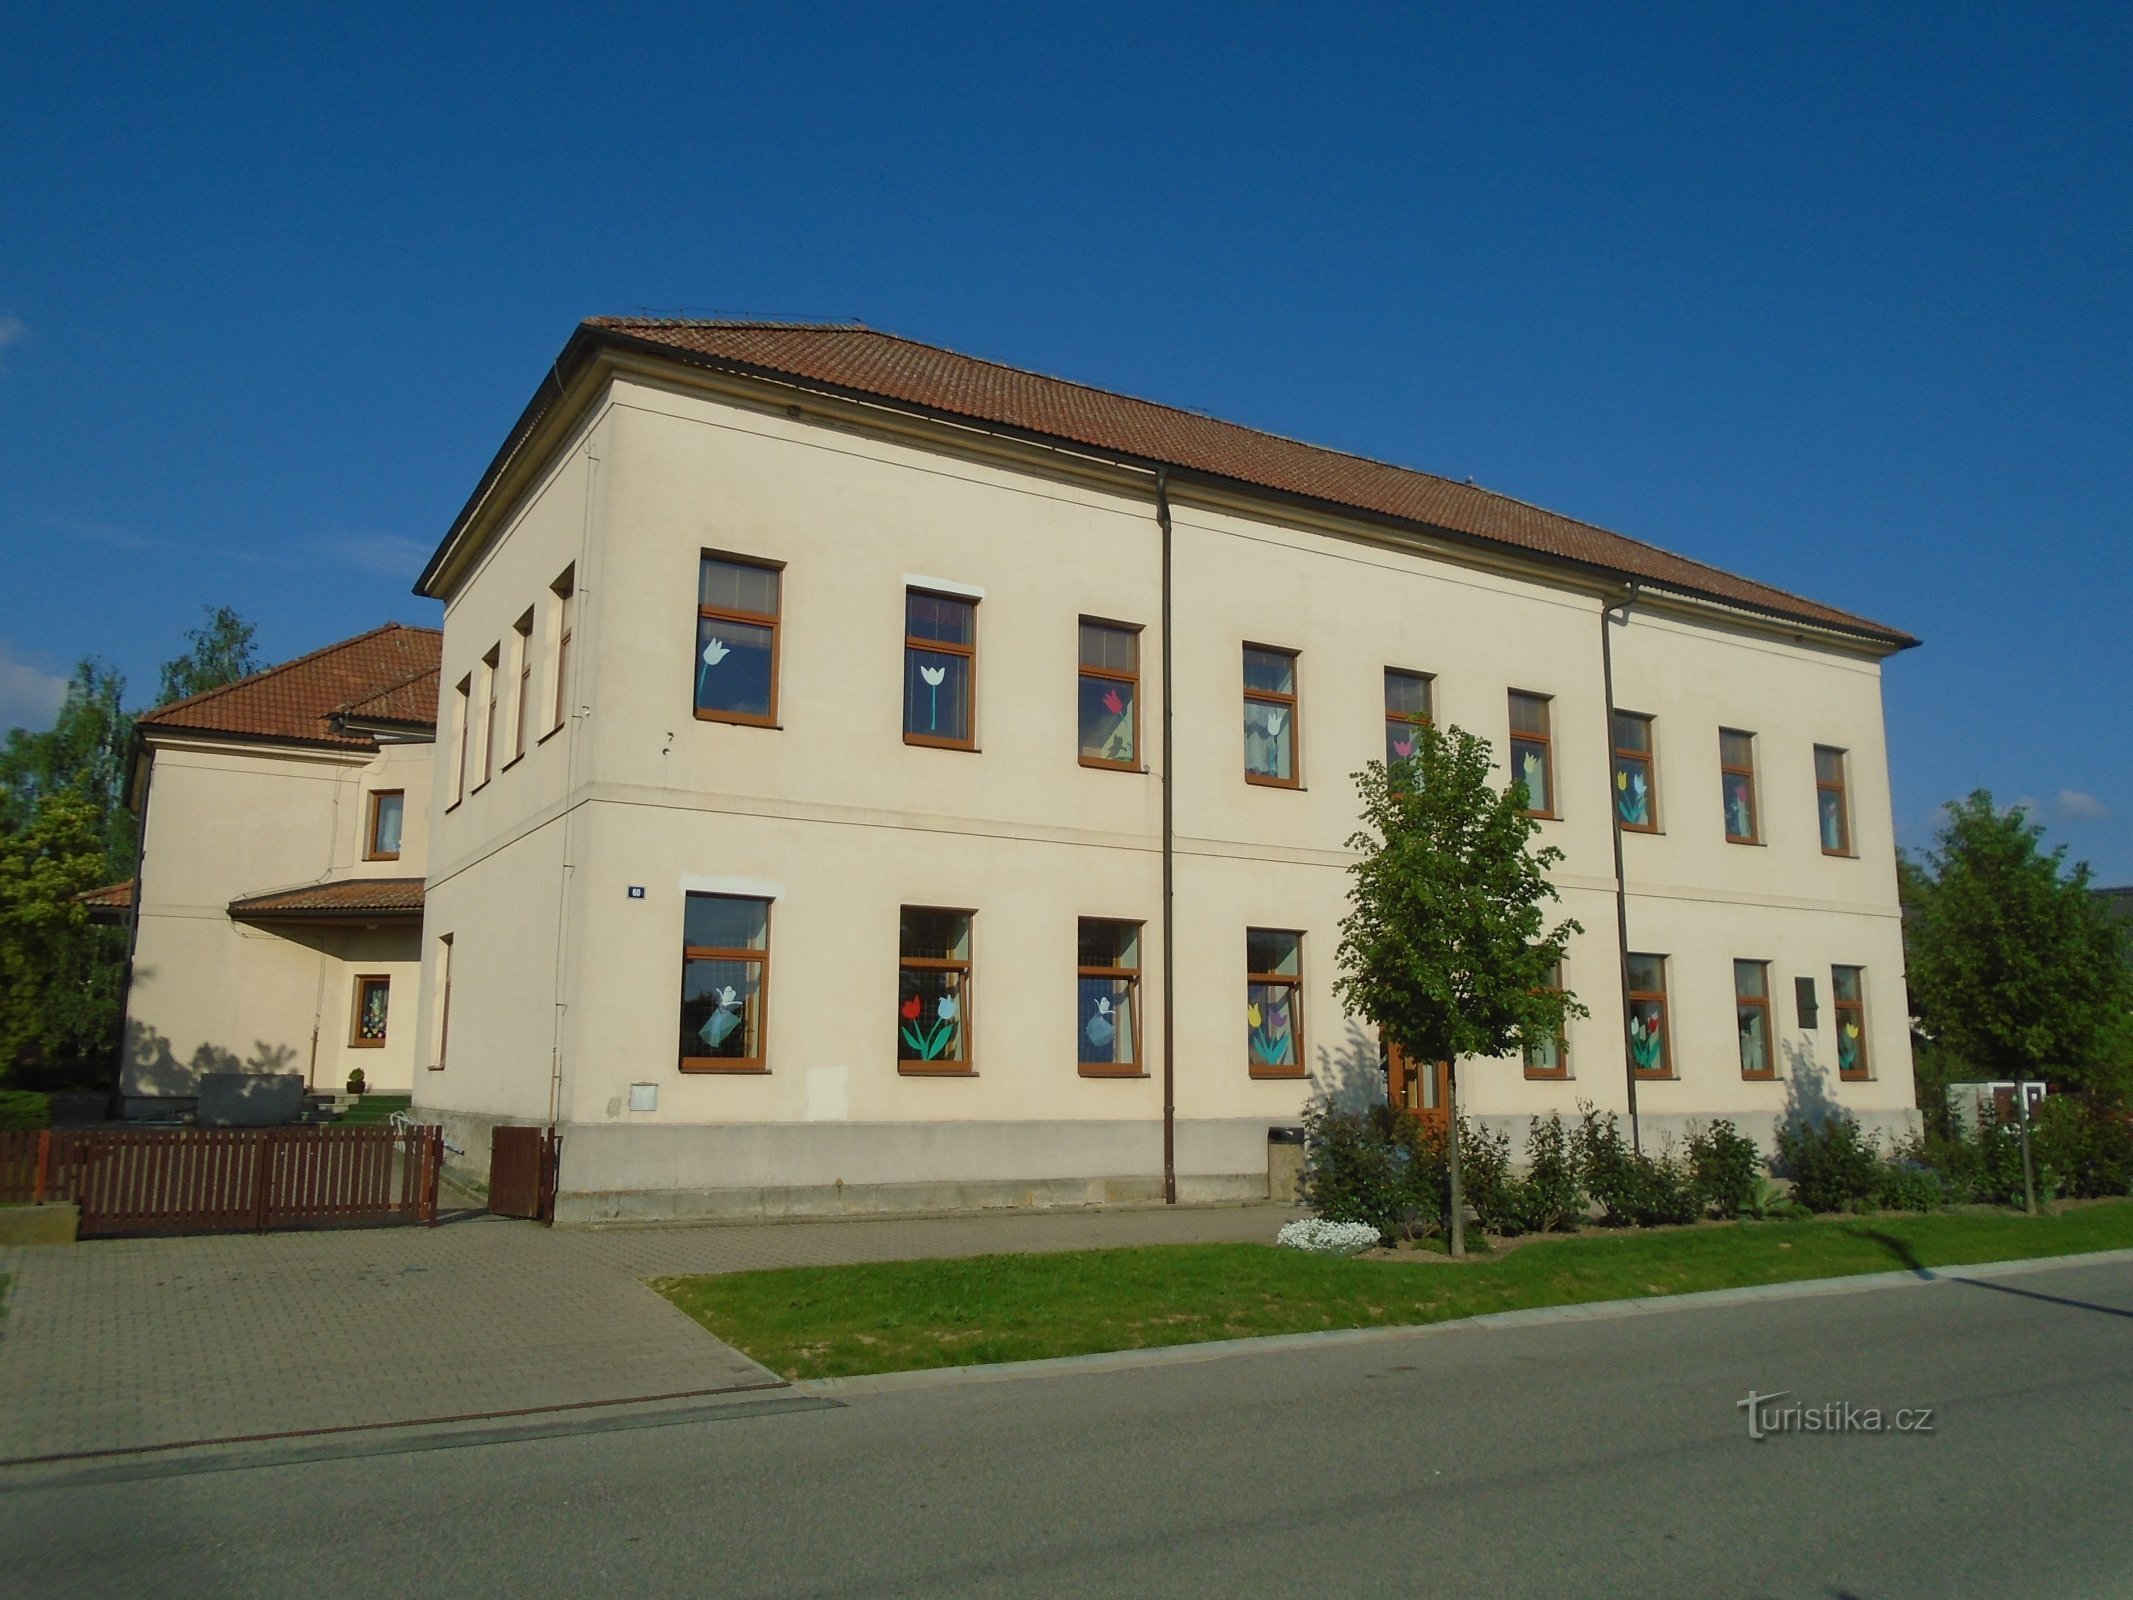 Scuola (Praskačka)